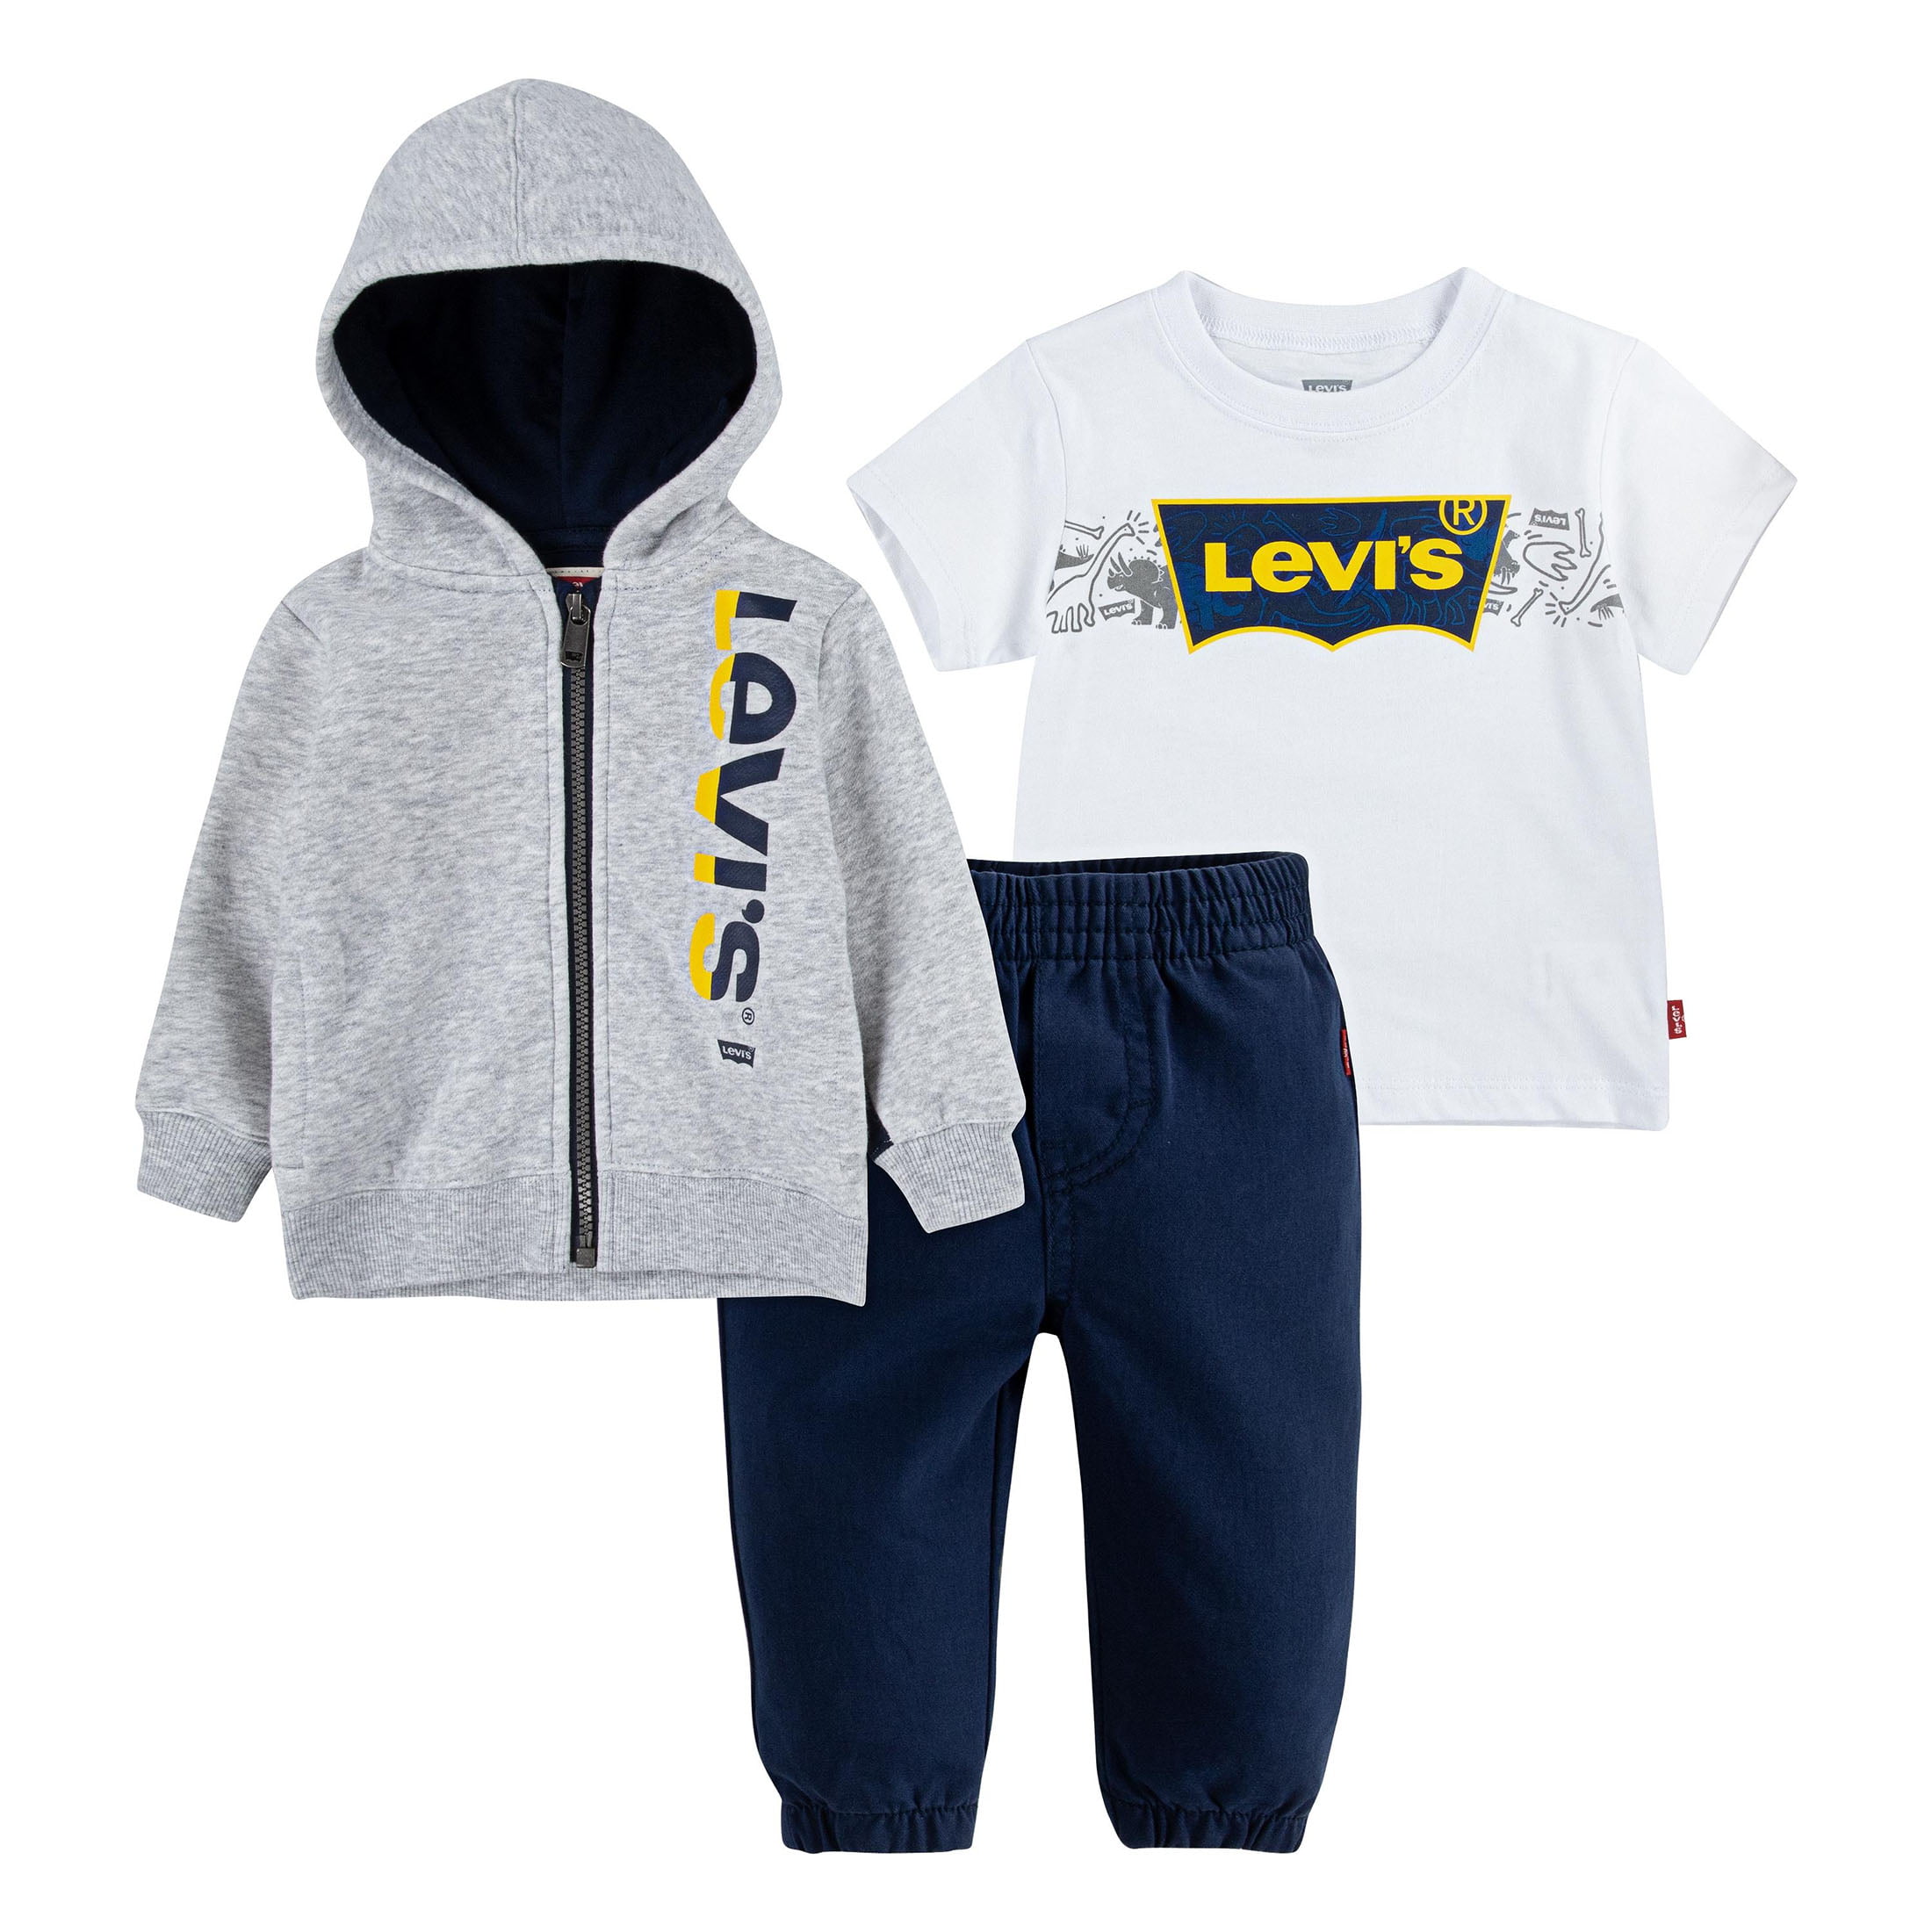 Personalised Soft Baby Boy Girl Zipper Hoodie Design Babys Pyjamas Pjs Outfit 